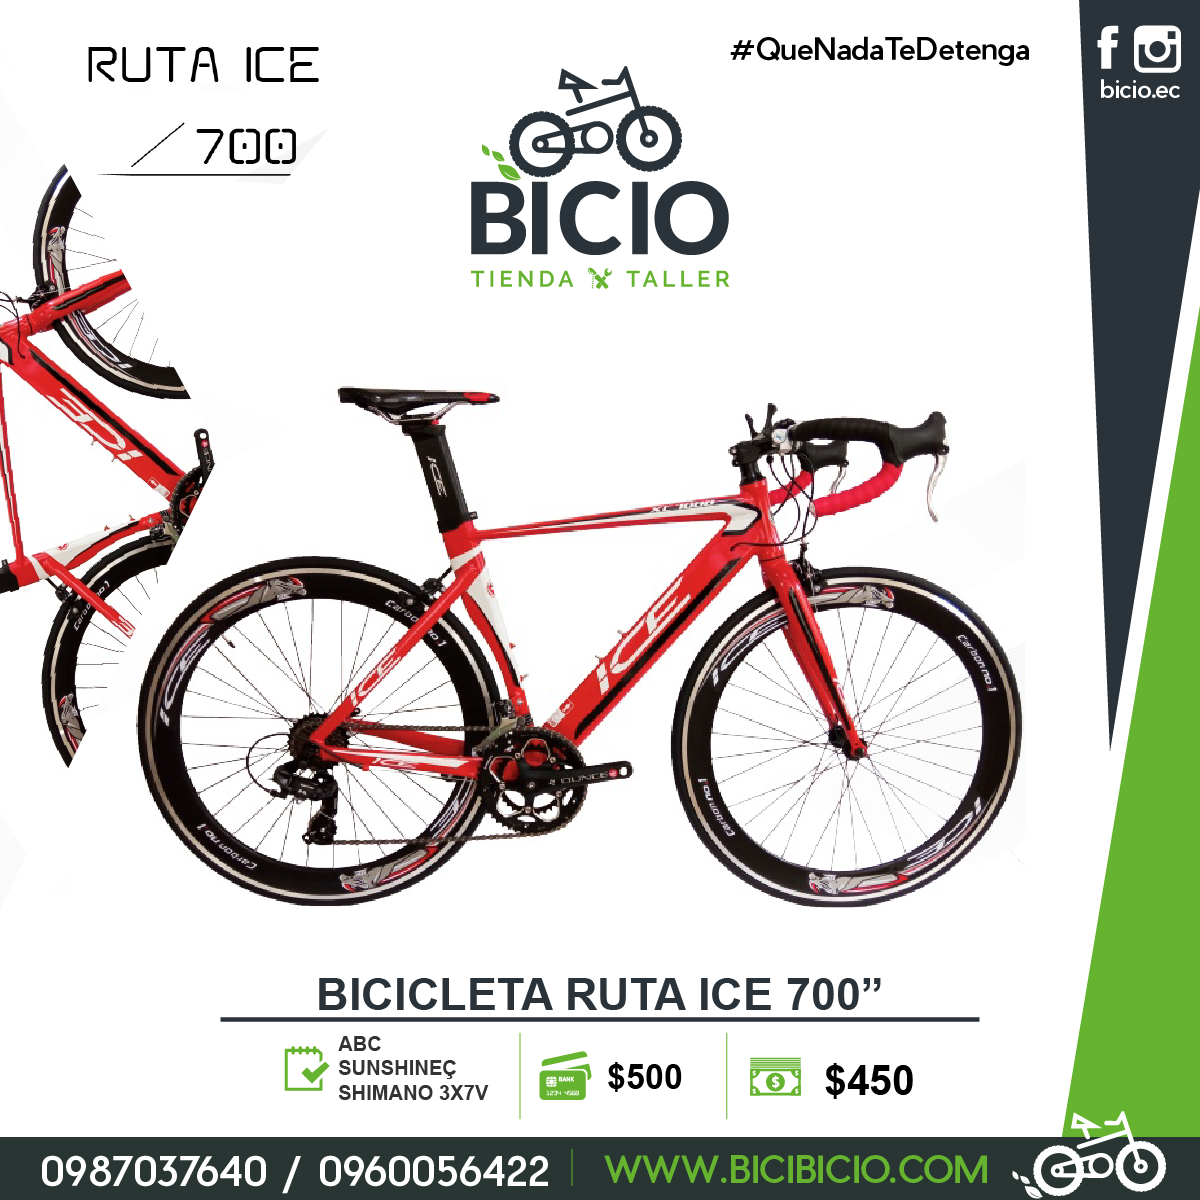 Cilia Status extremely Bicicleta Ruta ice 700” - Bicio tienda - taller de bicicletas